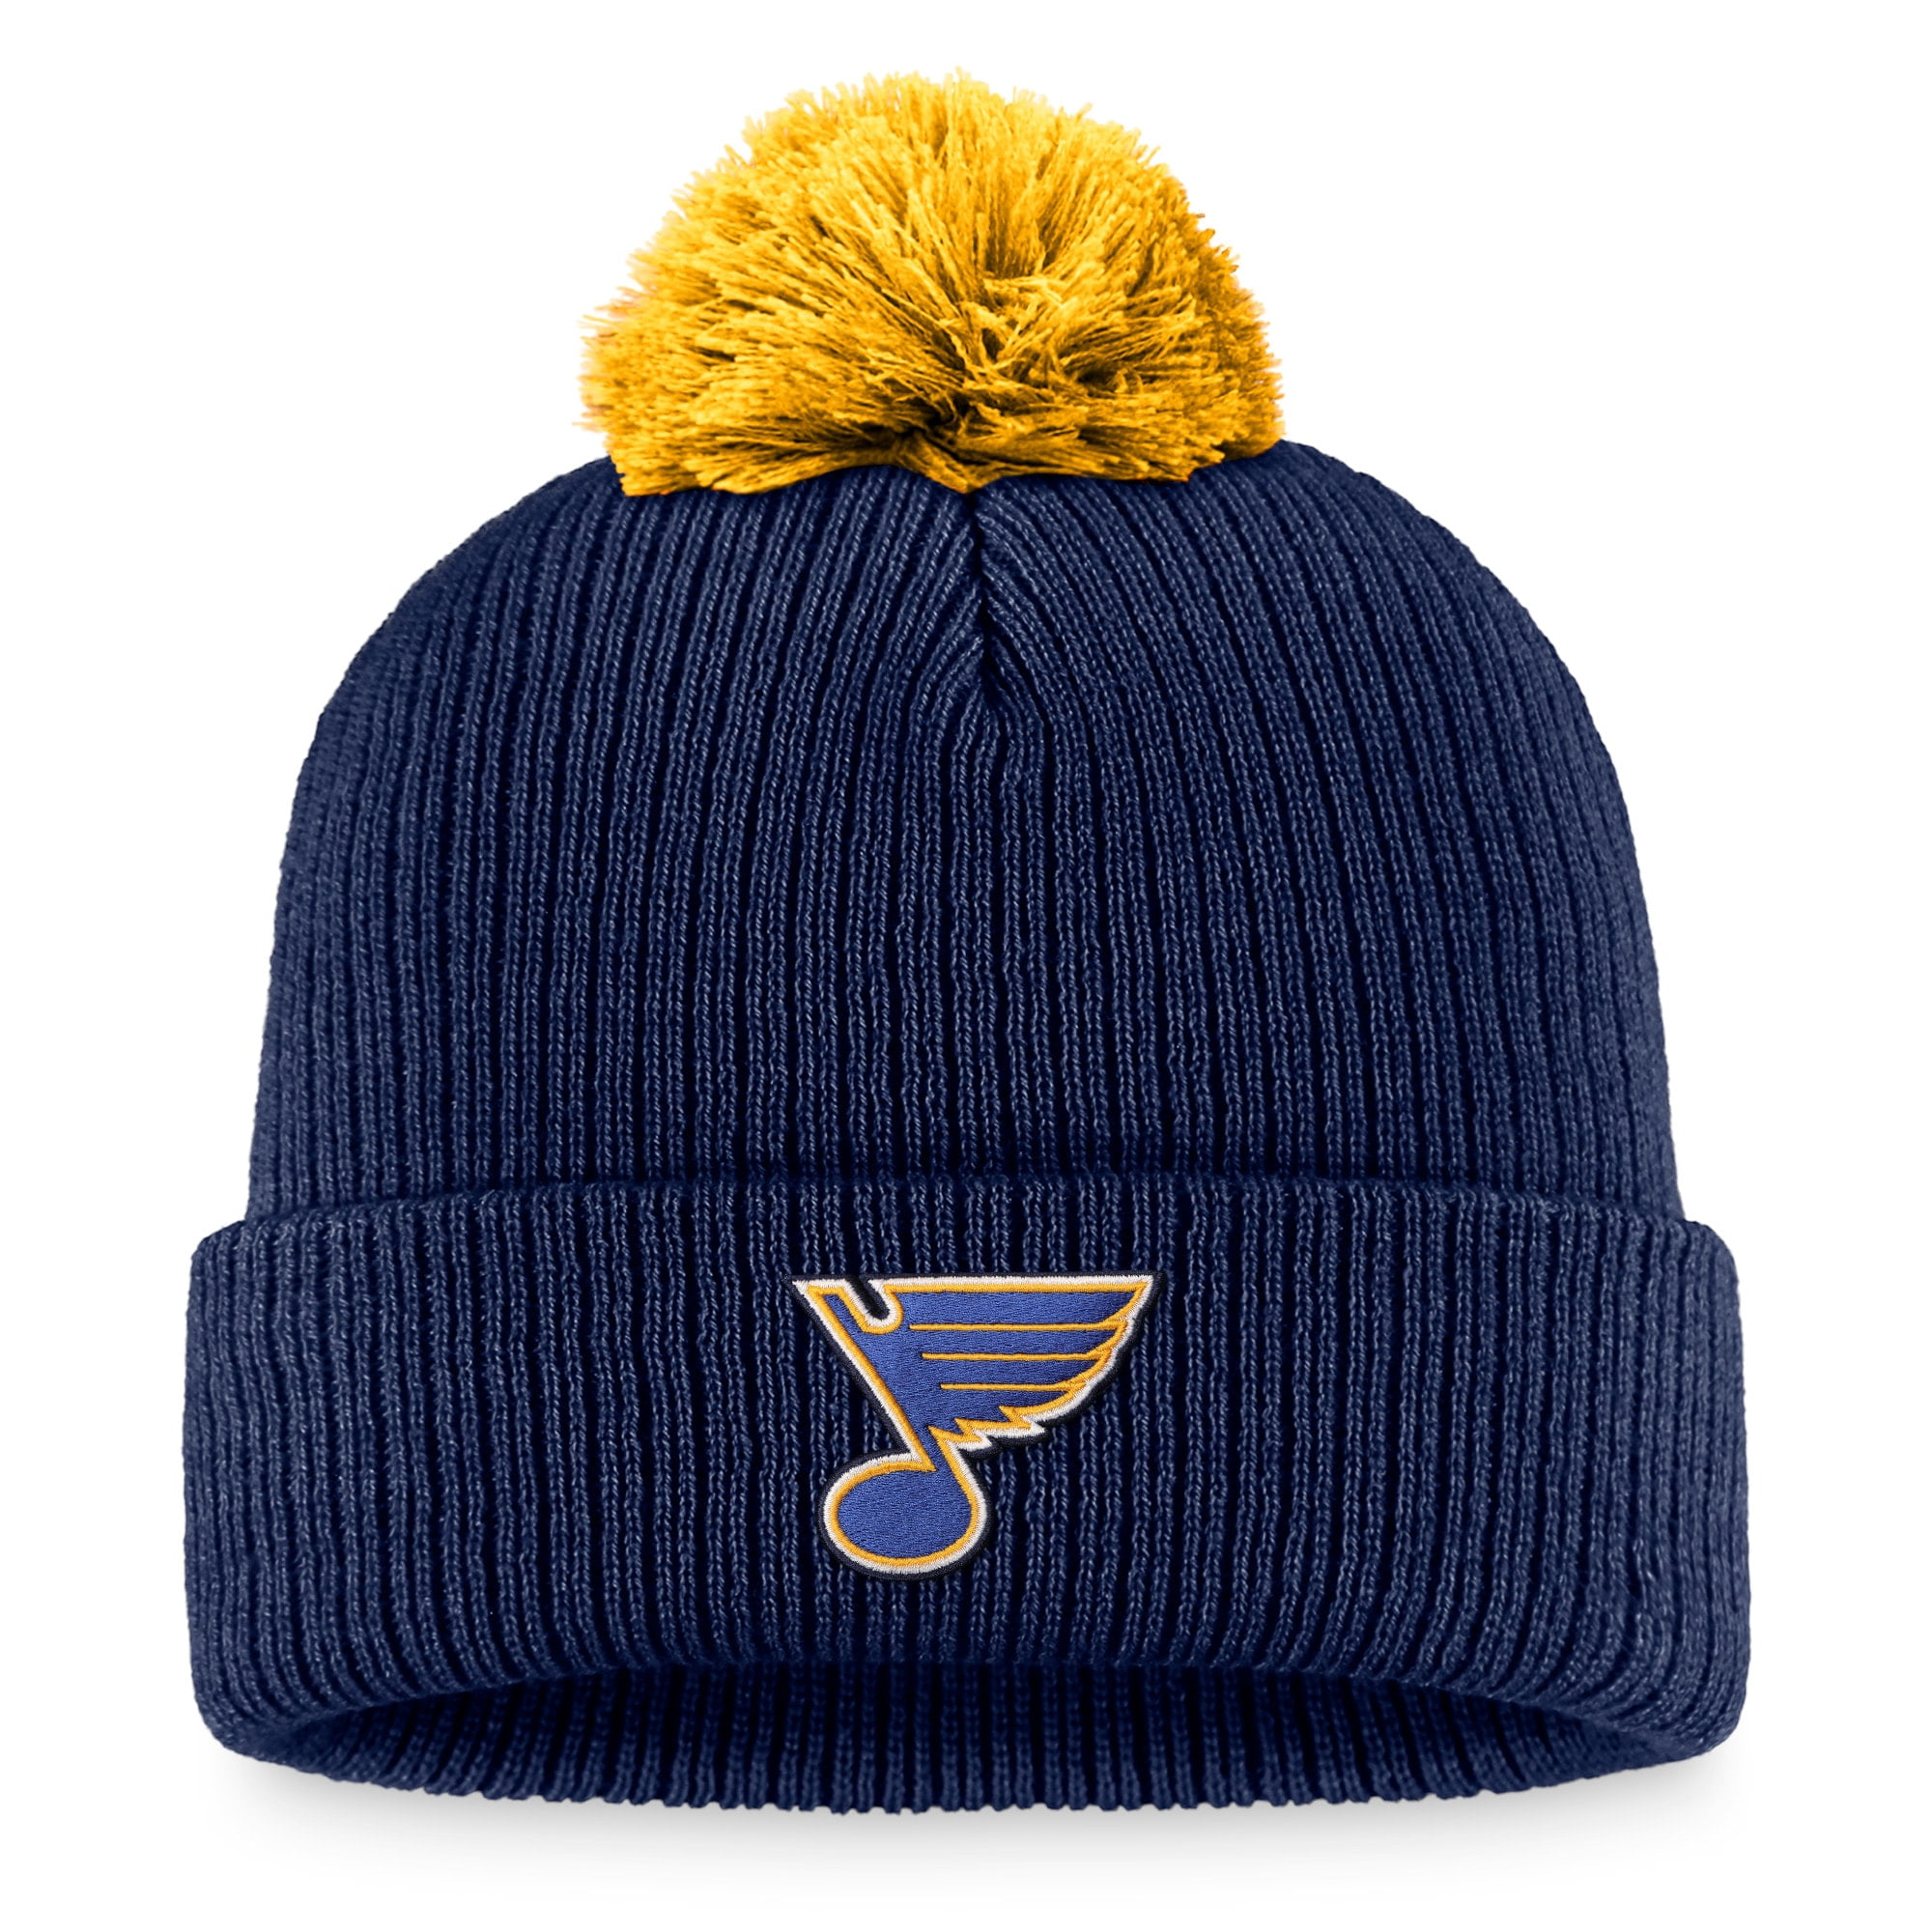 Men's Fanatics Branded Navy St. Louis Blues Team Cuffed Knit Hat